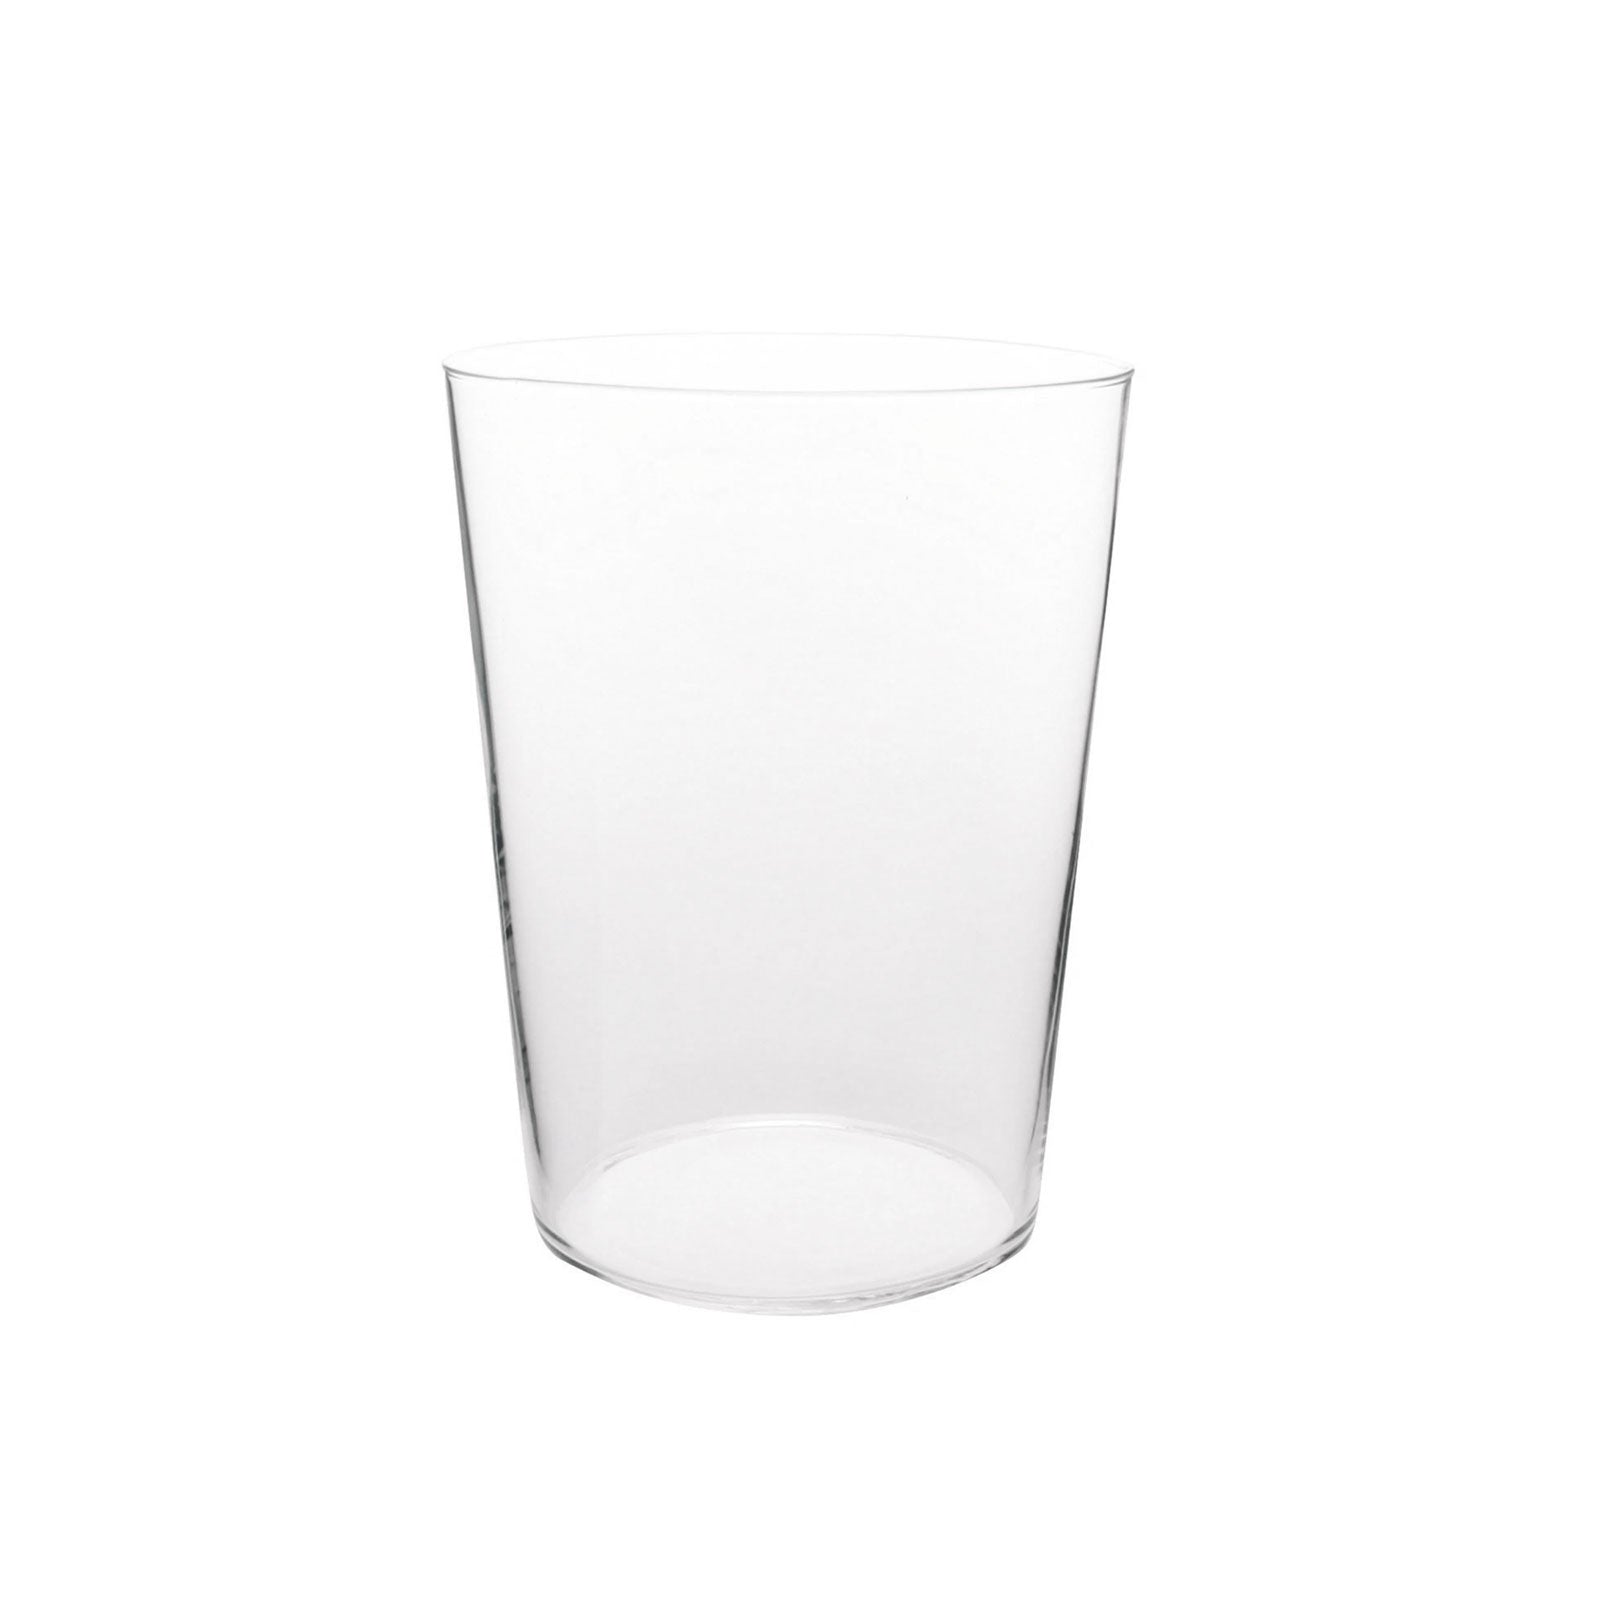 Modern Drinking Glasses